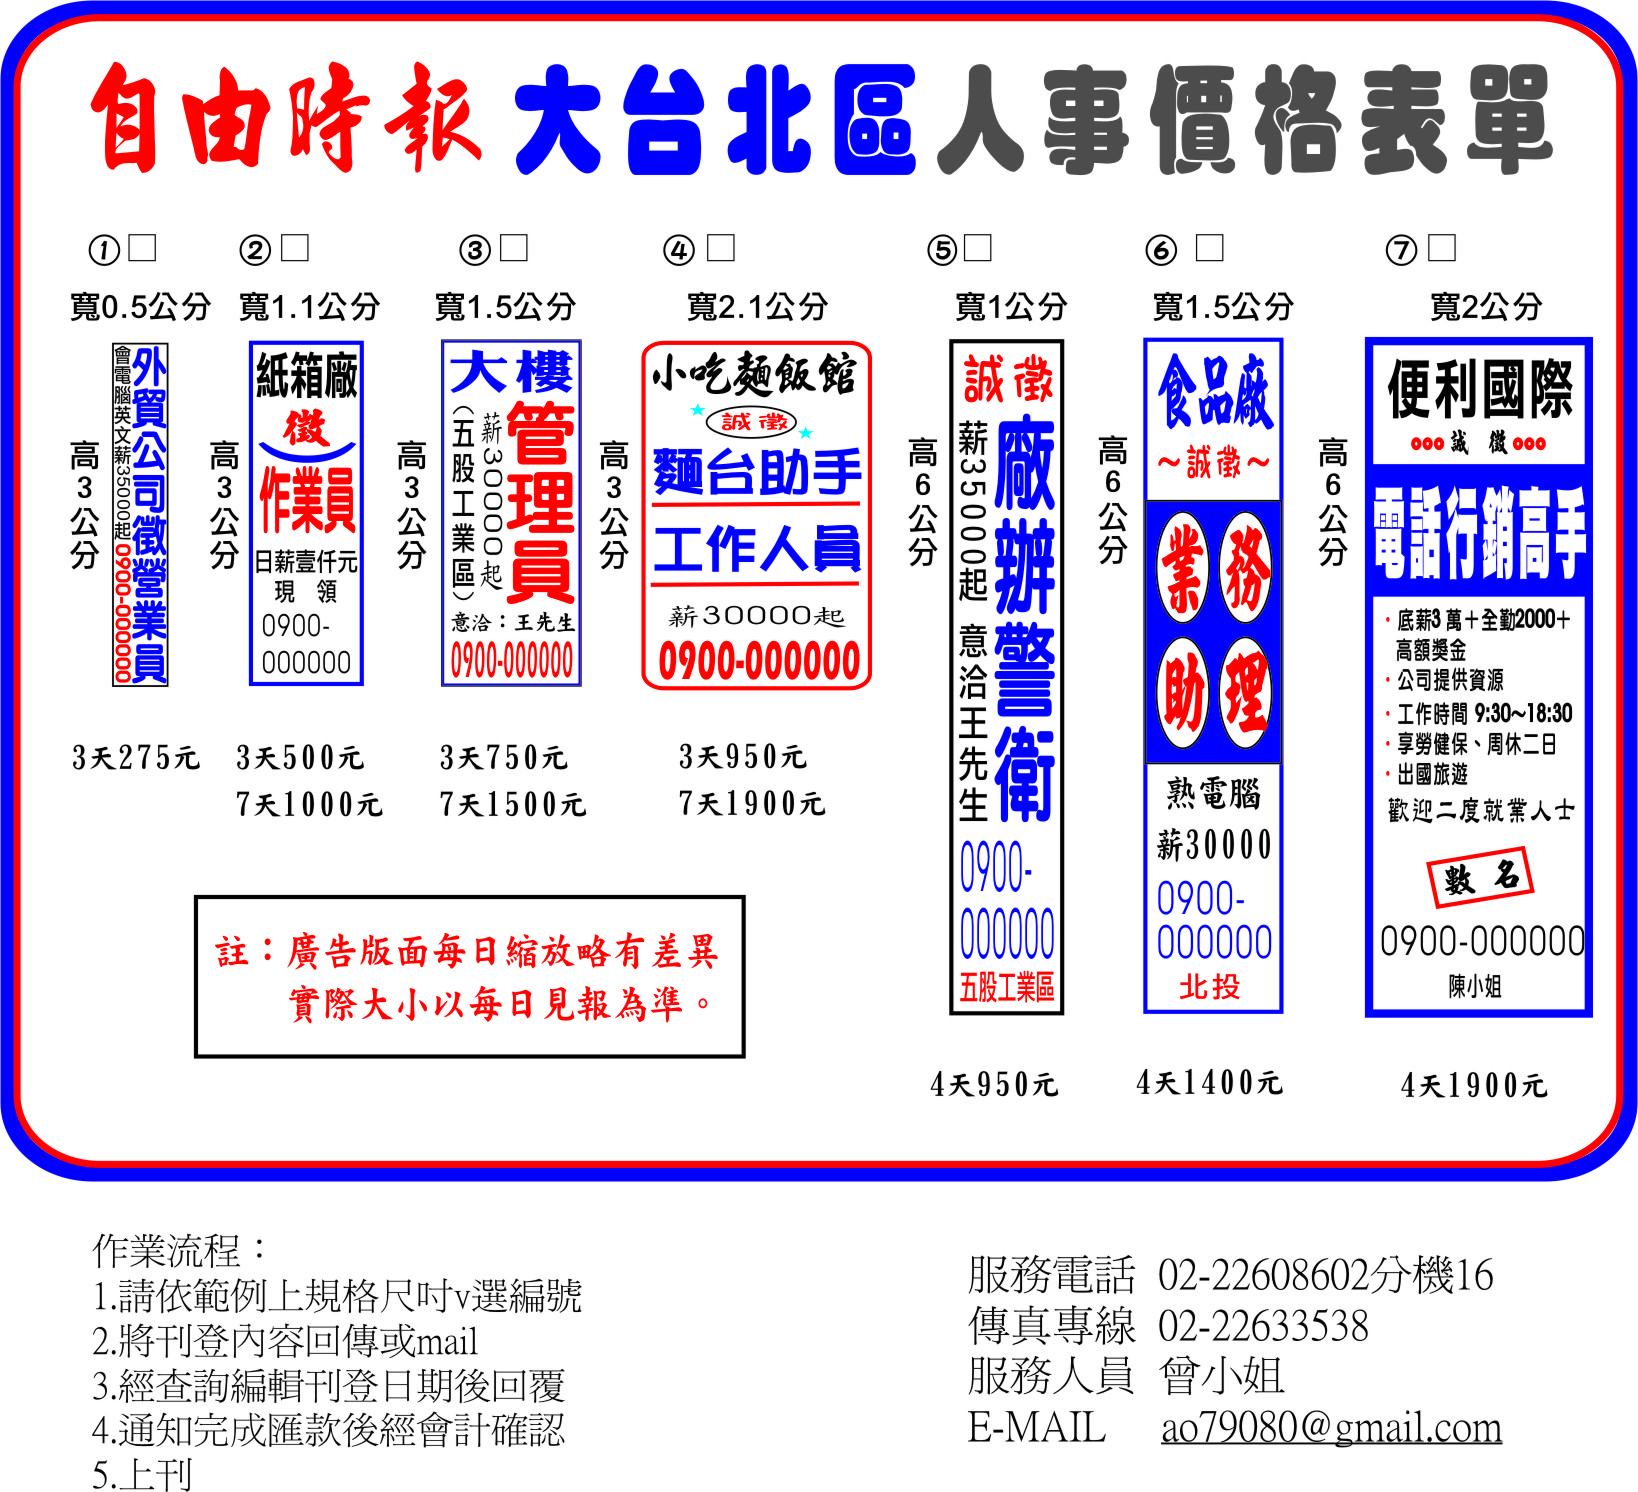 台北自由時報刊登報紙徵人廣告費用